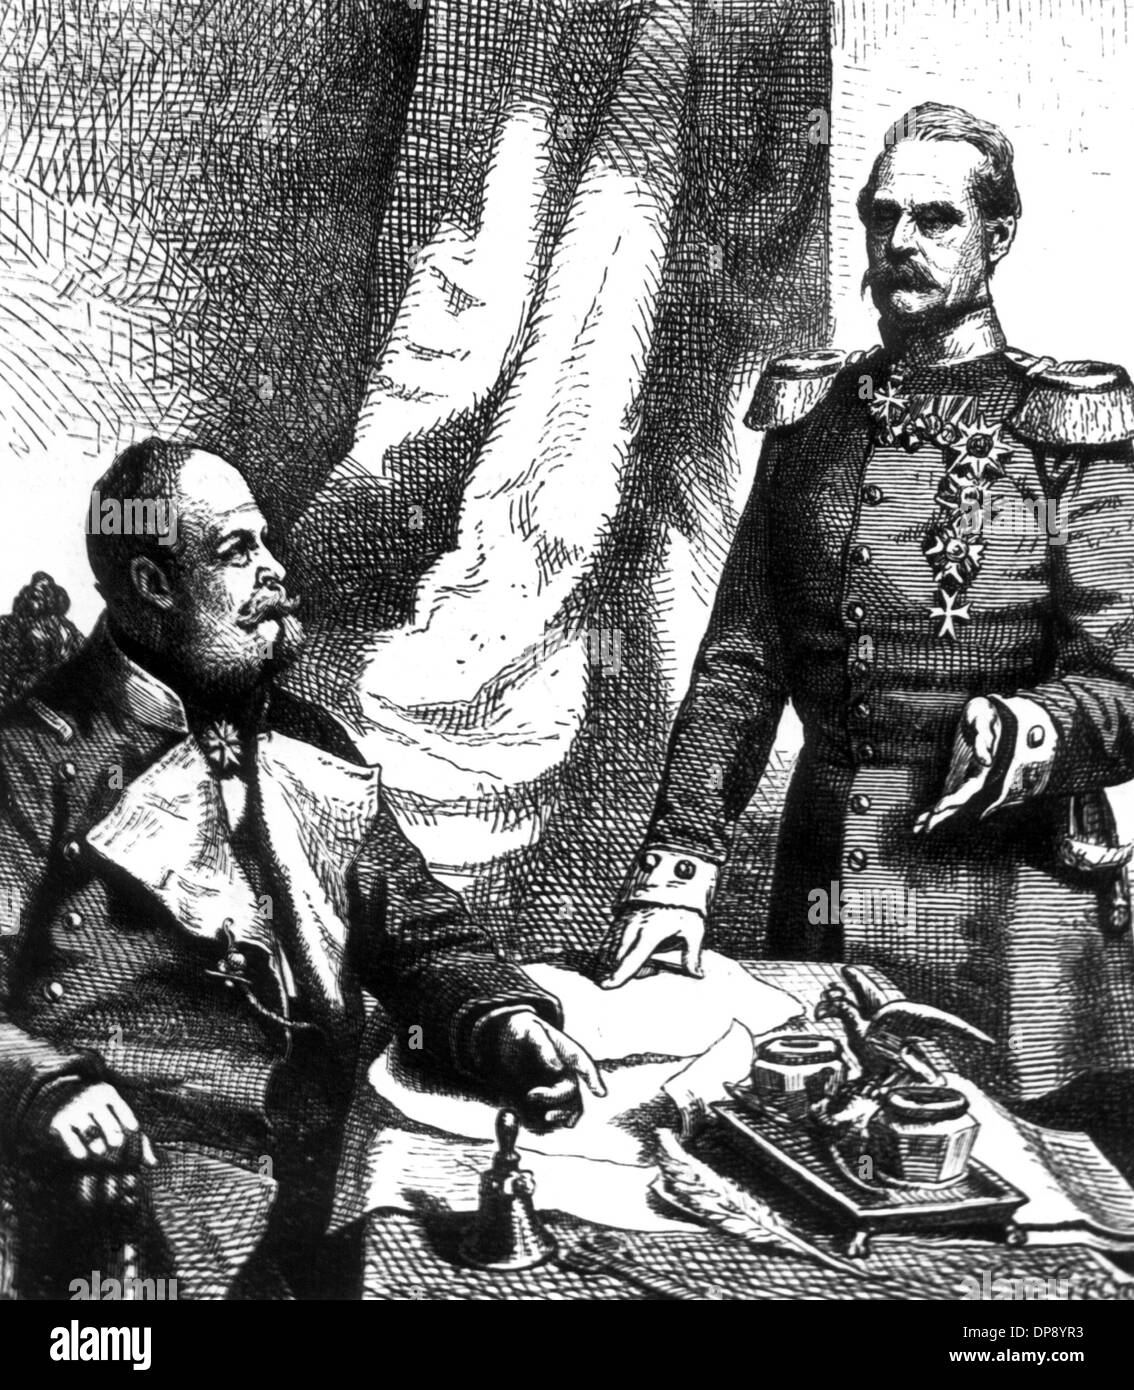 Preußische allgemeine Feld-Marschall und Krieg-Minister Albrecht Graf von Roon verleiht Kaiser Wilhelm I. in einer zeitgenössischen Darstellung ein Berichts. Er wurde am 30. April 1803 in Pleushagen geboren und starb am 23. Februar 1879 in Berlin. Stockfoto